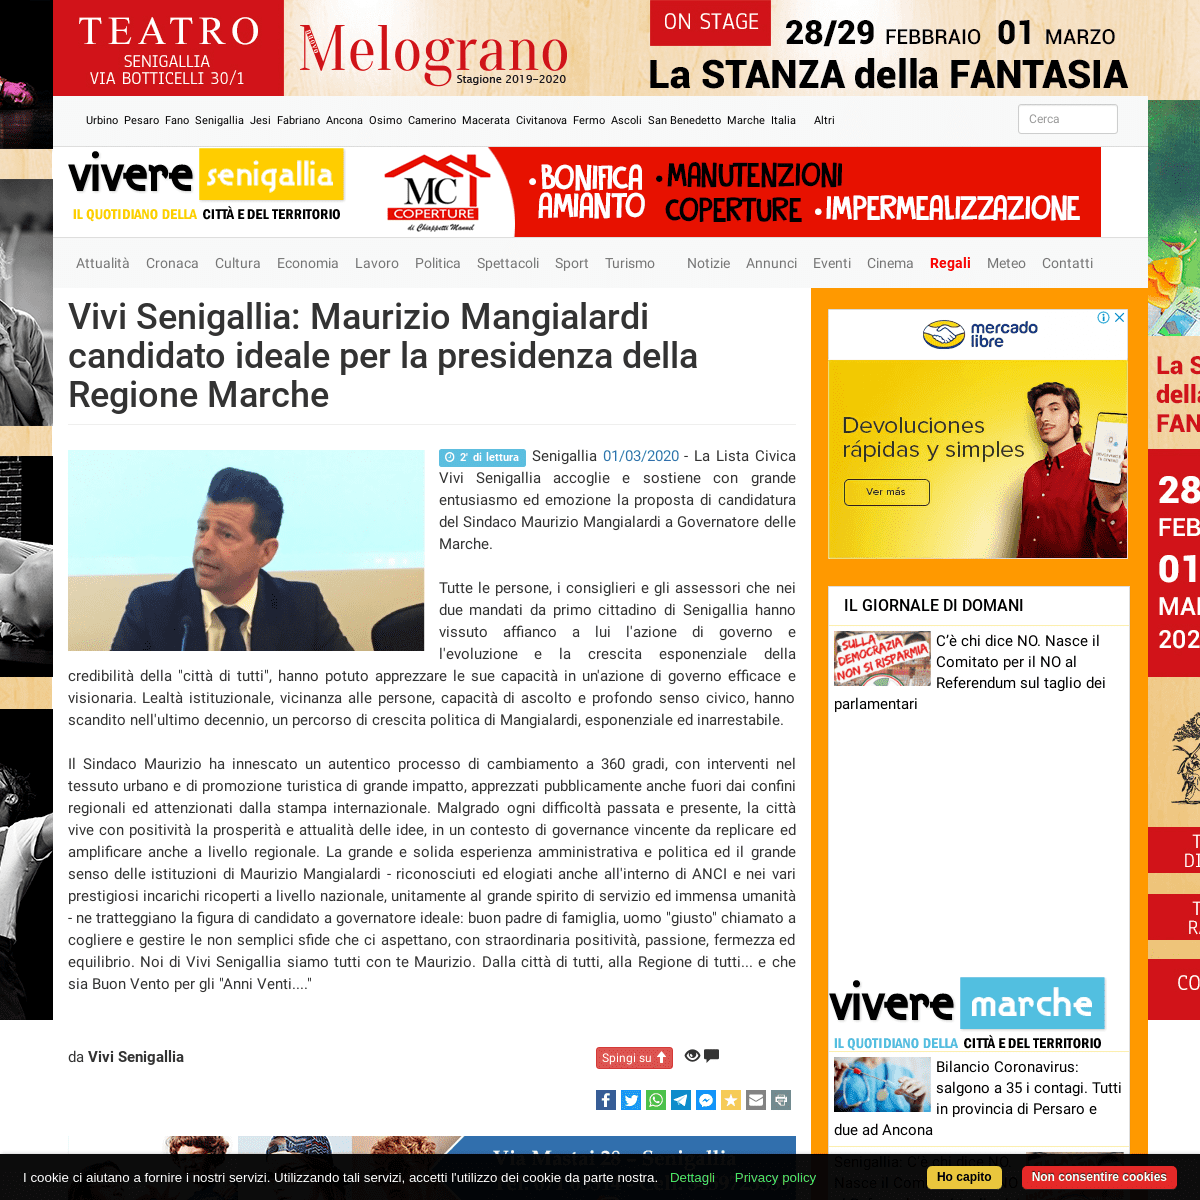 A complete backup of www.viveresenigallia.it/2020/03/02/vivi-senigallia-maurizio-mangialardi-candidato-ideale-per-la-presidenza-